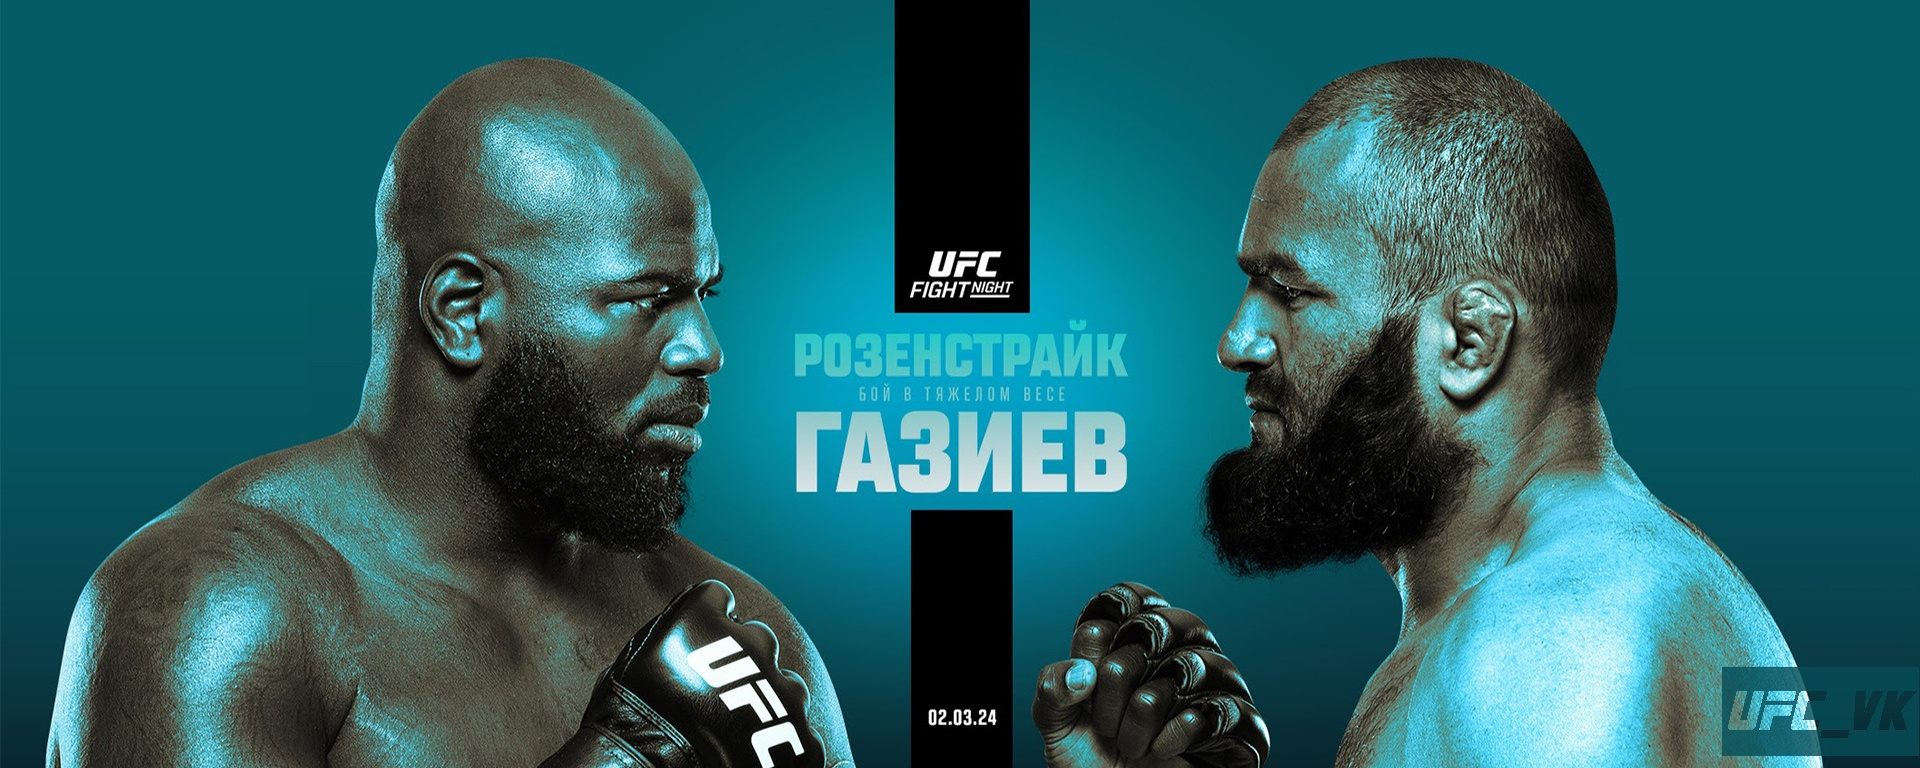 Где смотреть турнир UFC Fight Night 238: Розенстрайк – Газиев